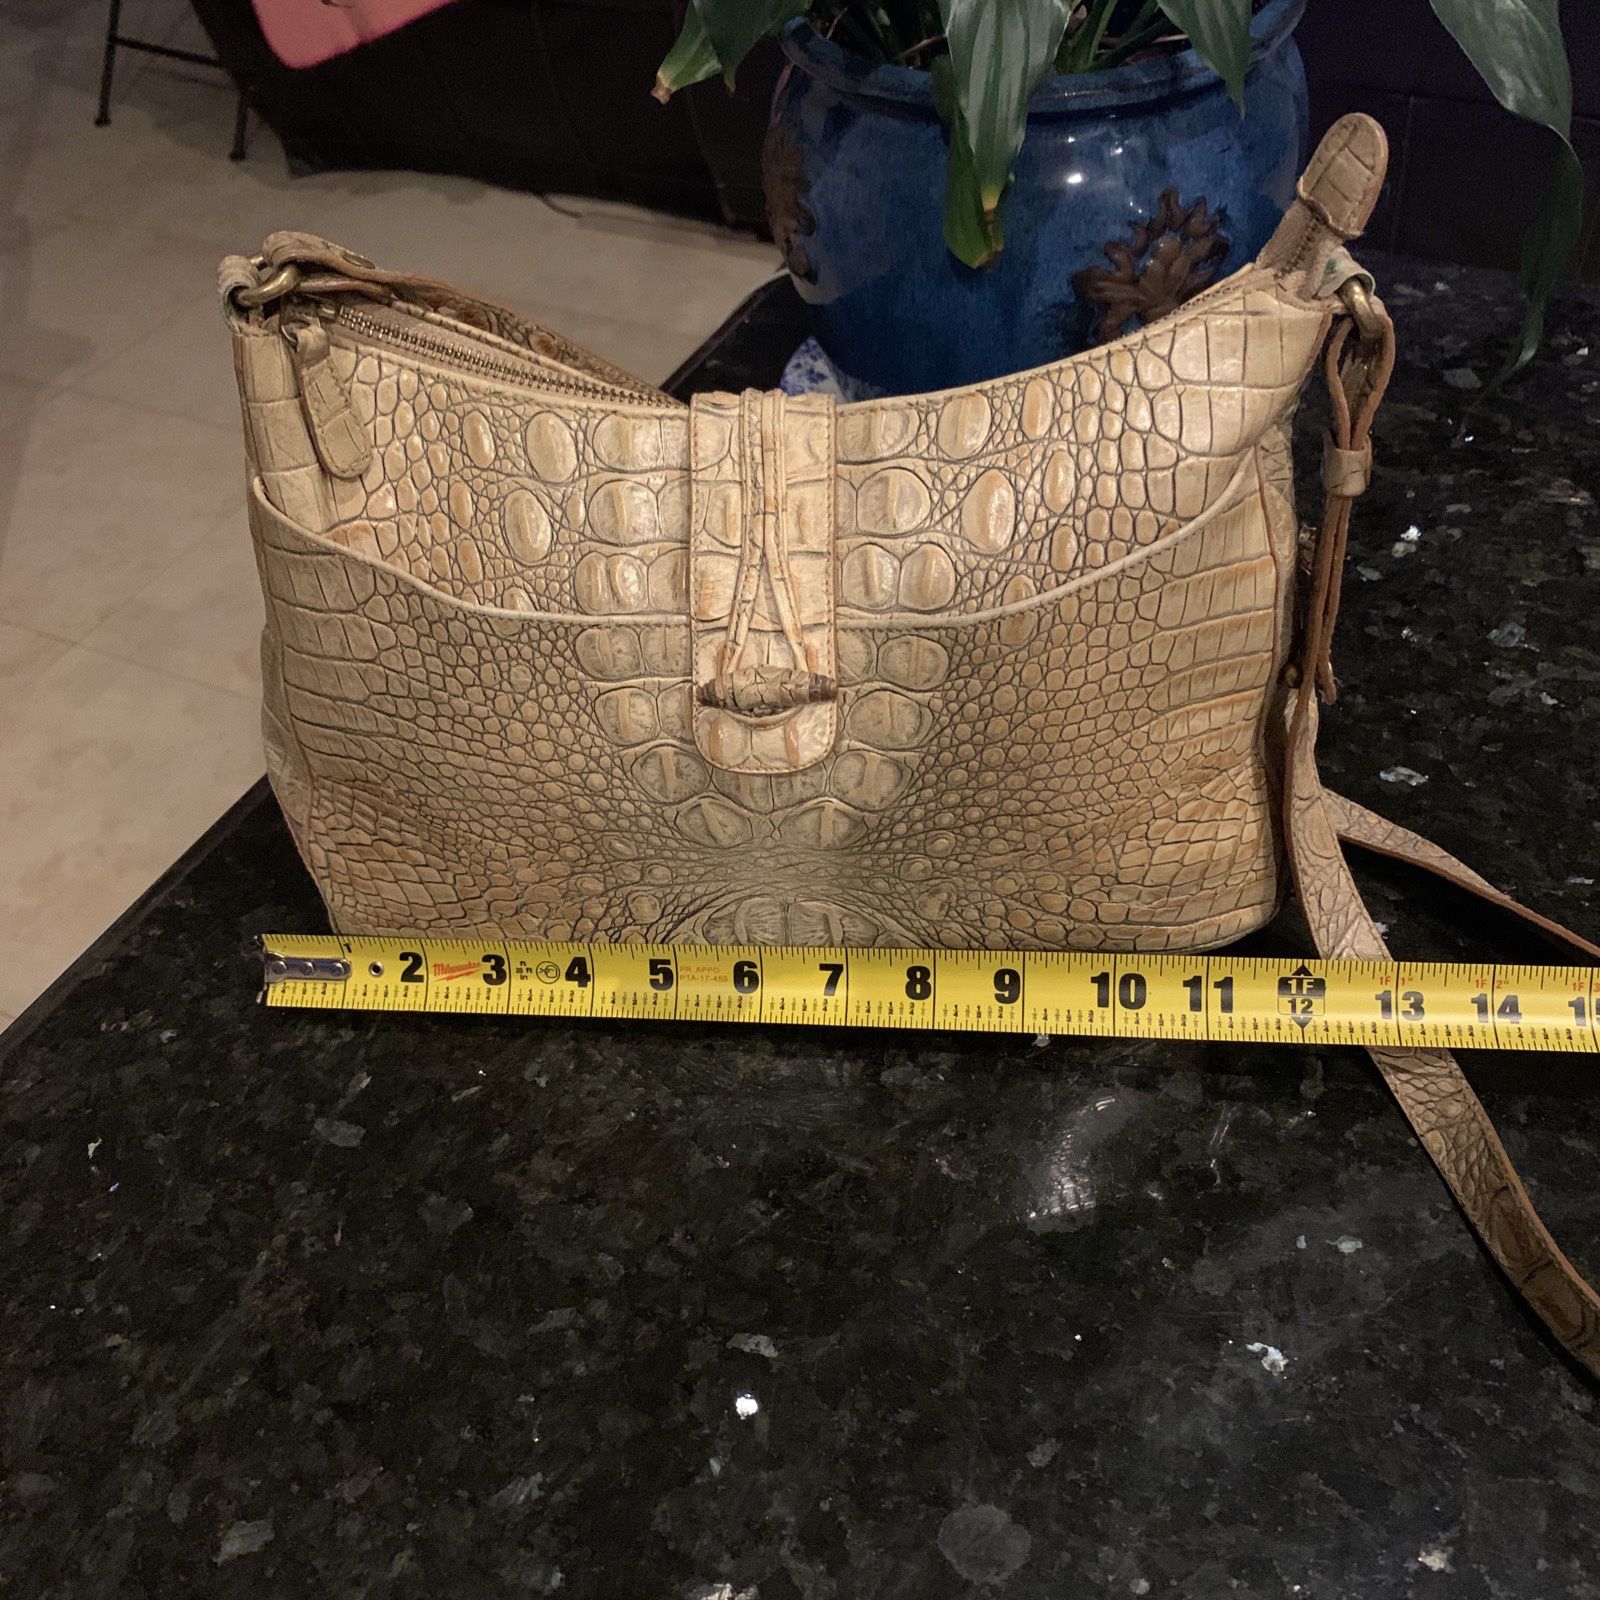 Brahmin Handbag Vintage Medium Beige Leather in Embossed Crocodile Satchel  for Sale in Fort Lauderdale, FL - OfferUp